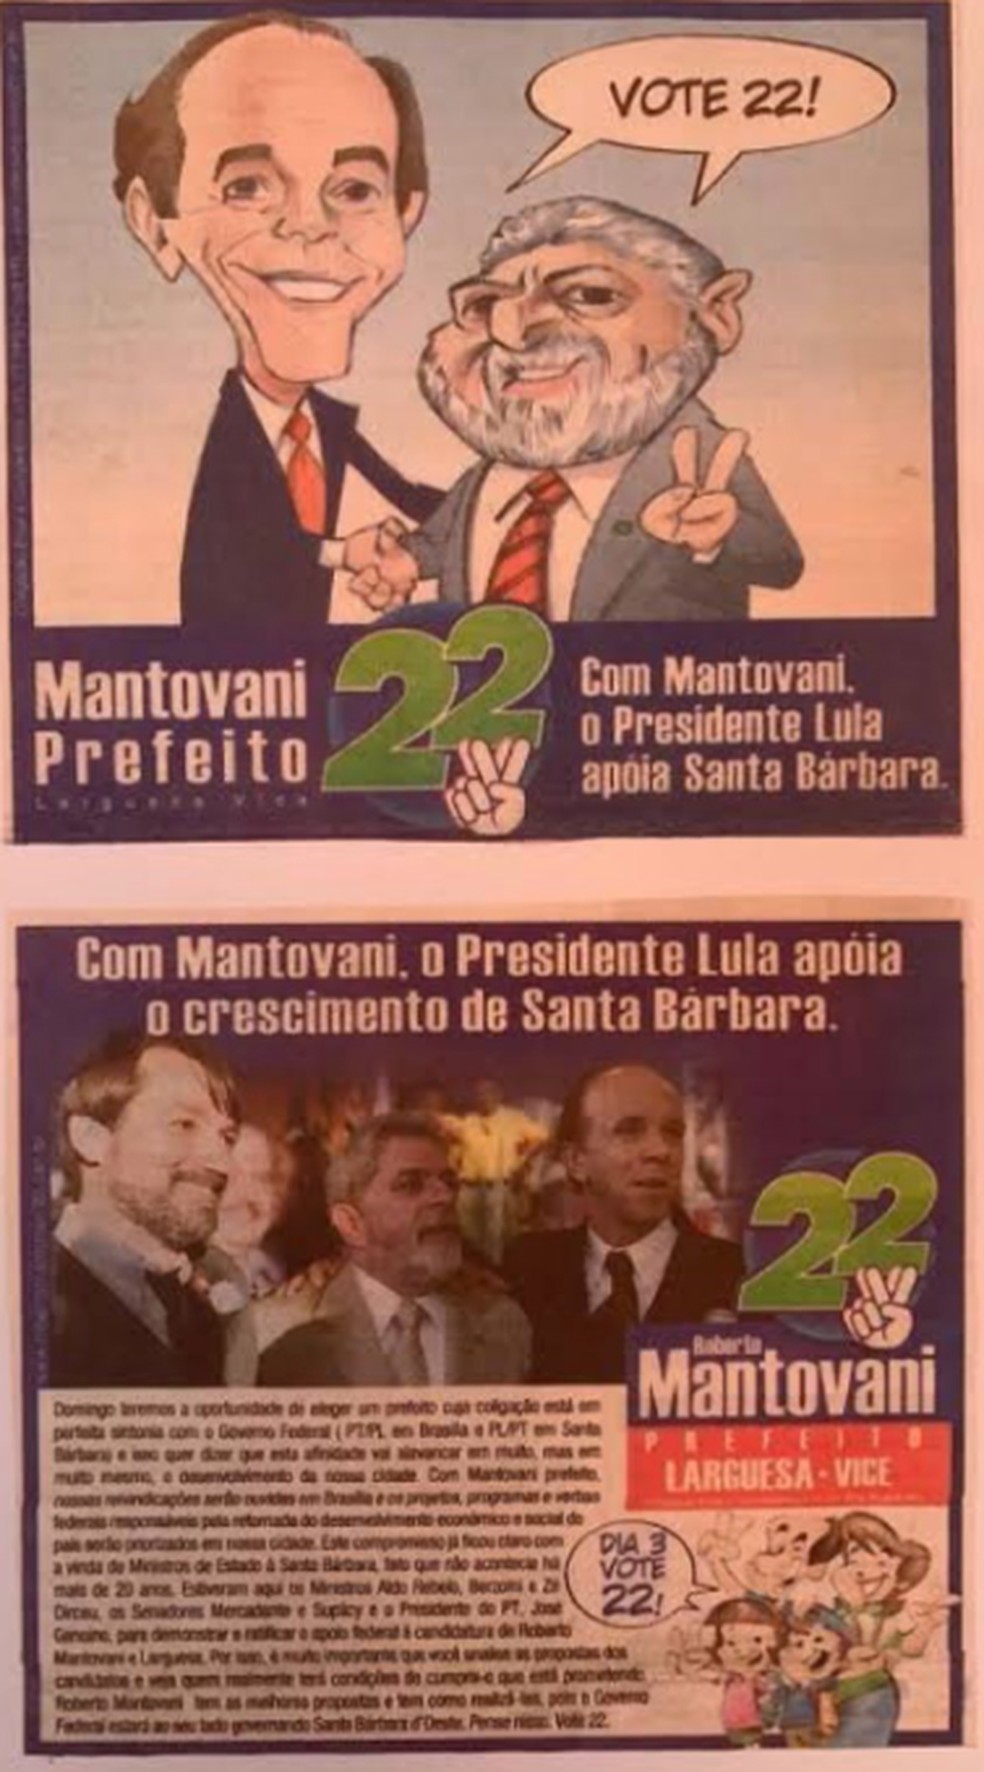 Charge põe Lula e Roberto Mantovani Filho em santinho na campanha para prefeitura no interior de São Paulo, em 2004 — Foto: Reprodução/Redes Sociais